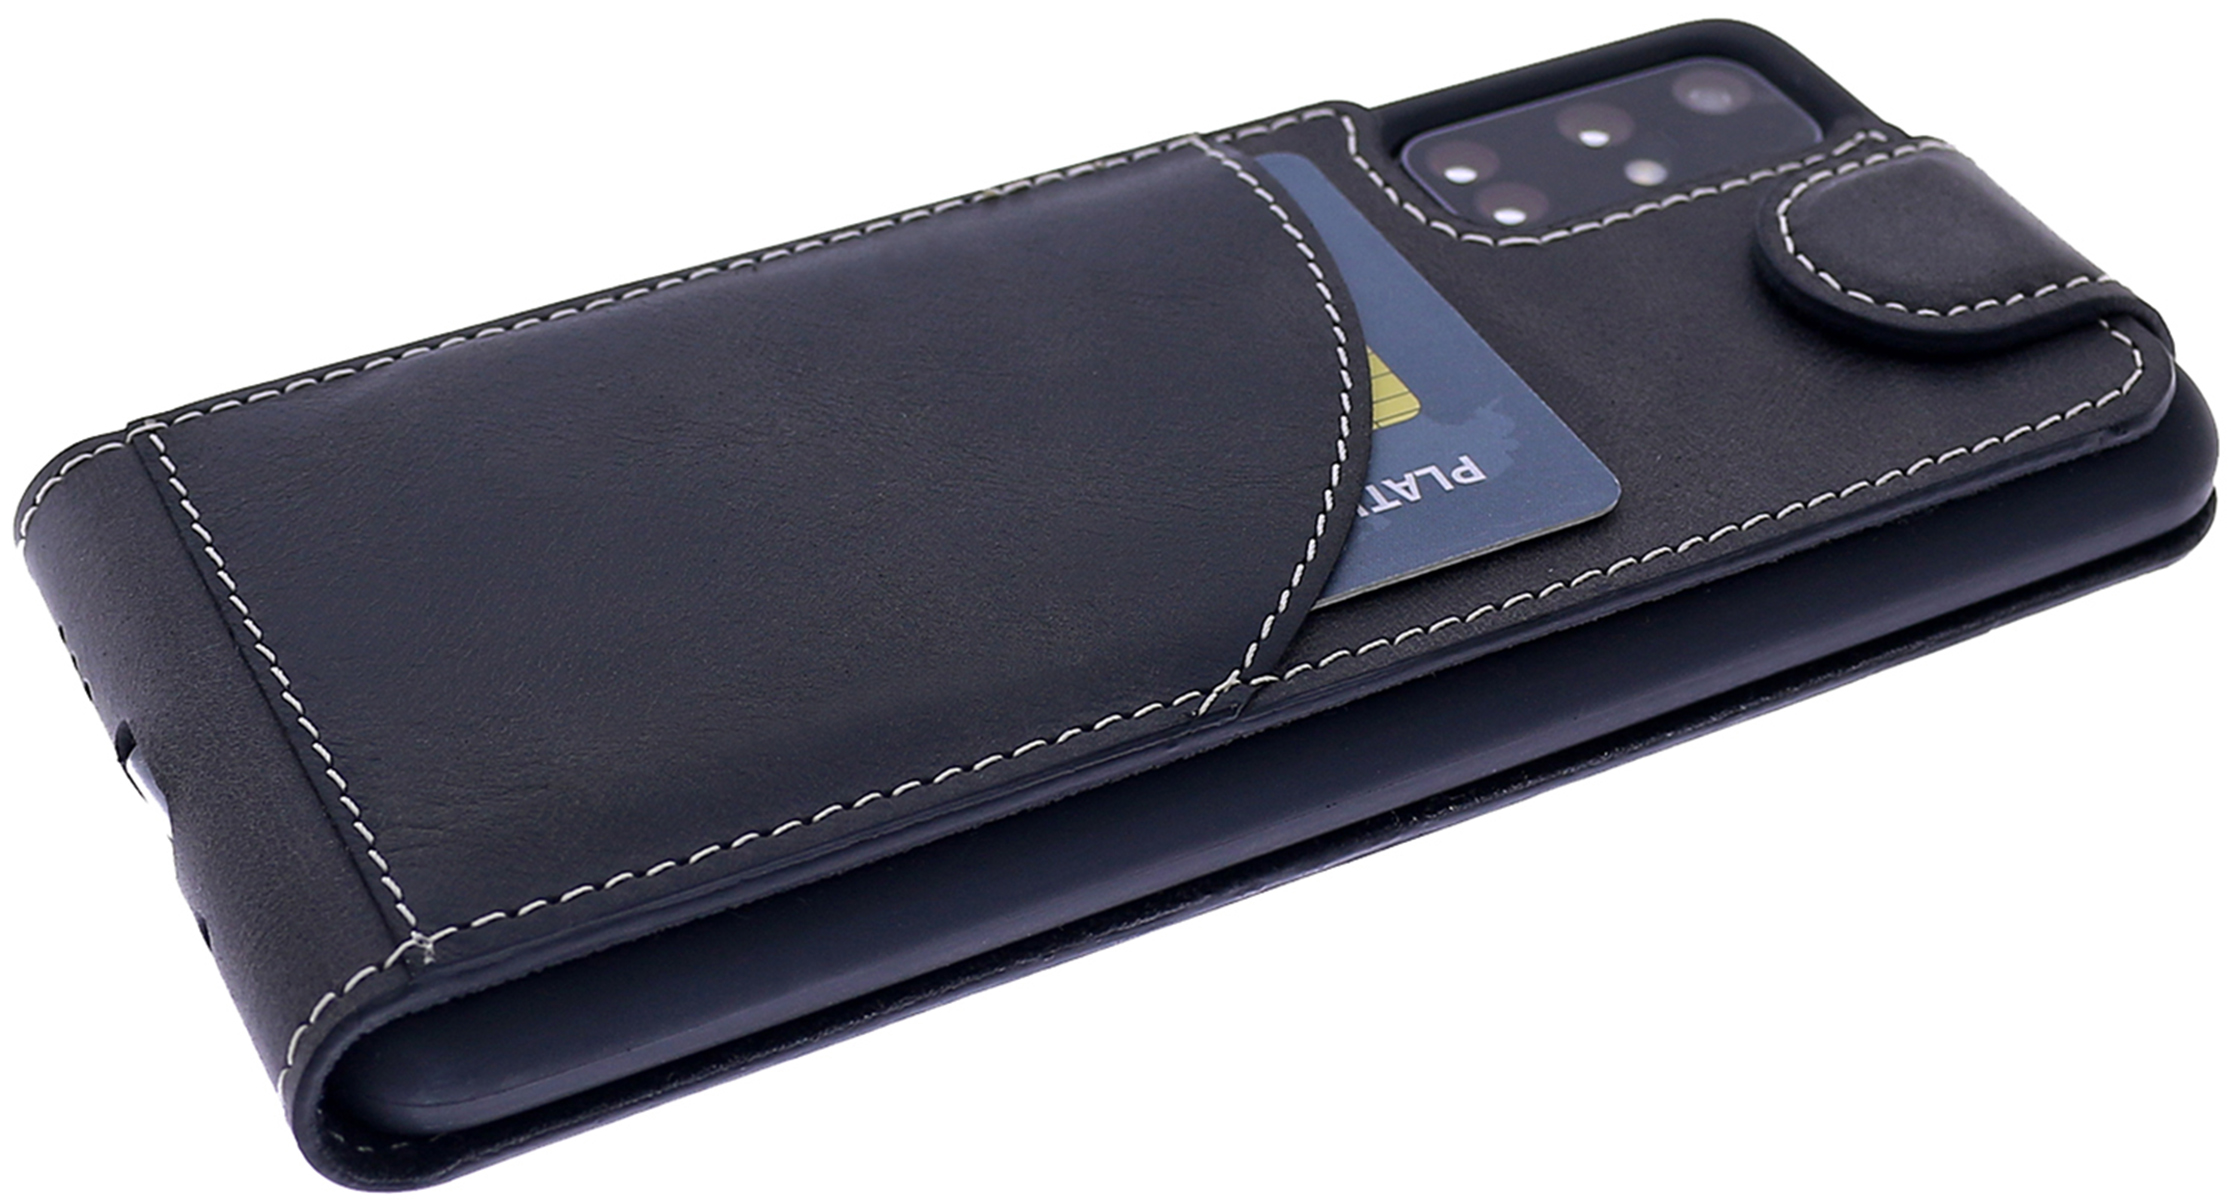 BURKLEY Cover, Leder, Flip aus Schwarz Handytasche Flip-Case Samsung, Galaxy A31,